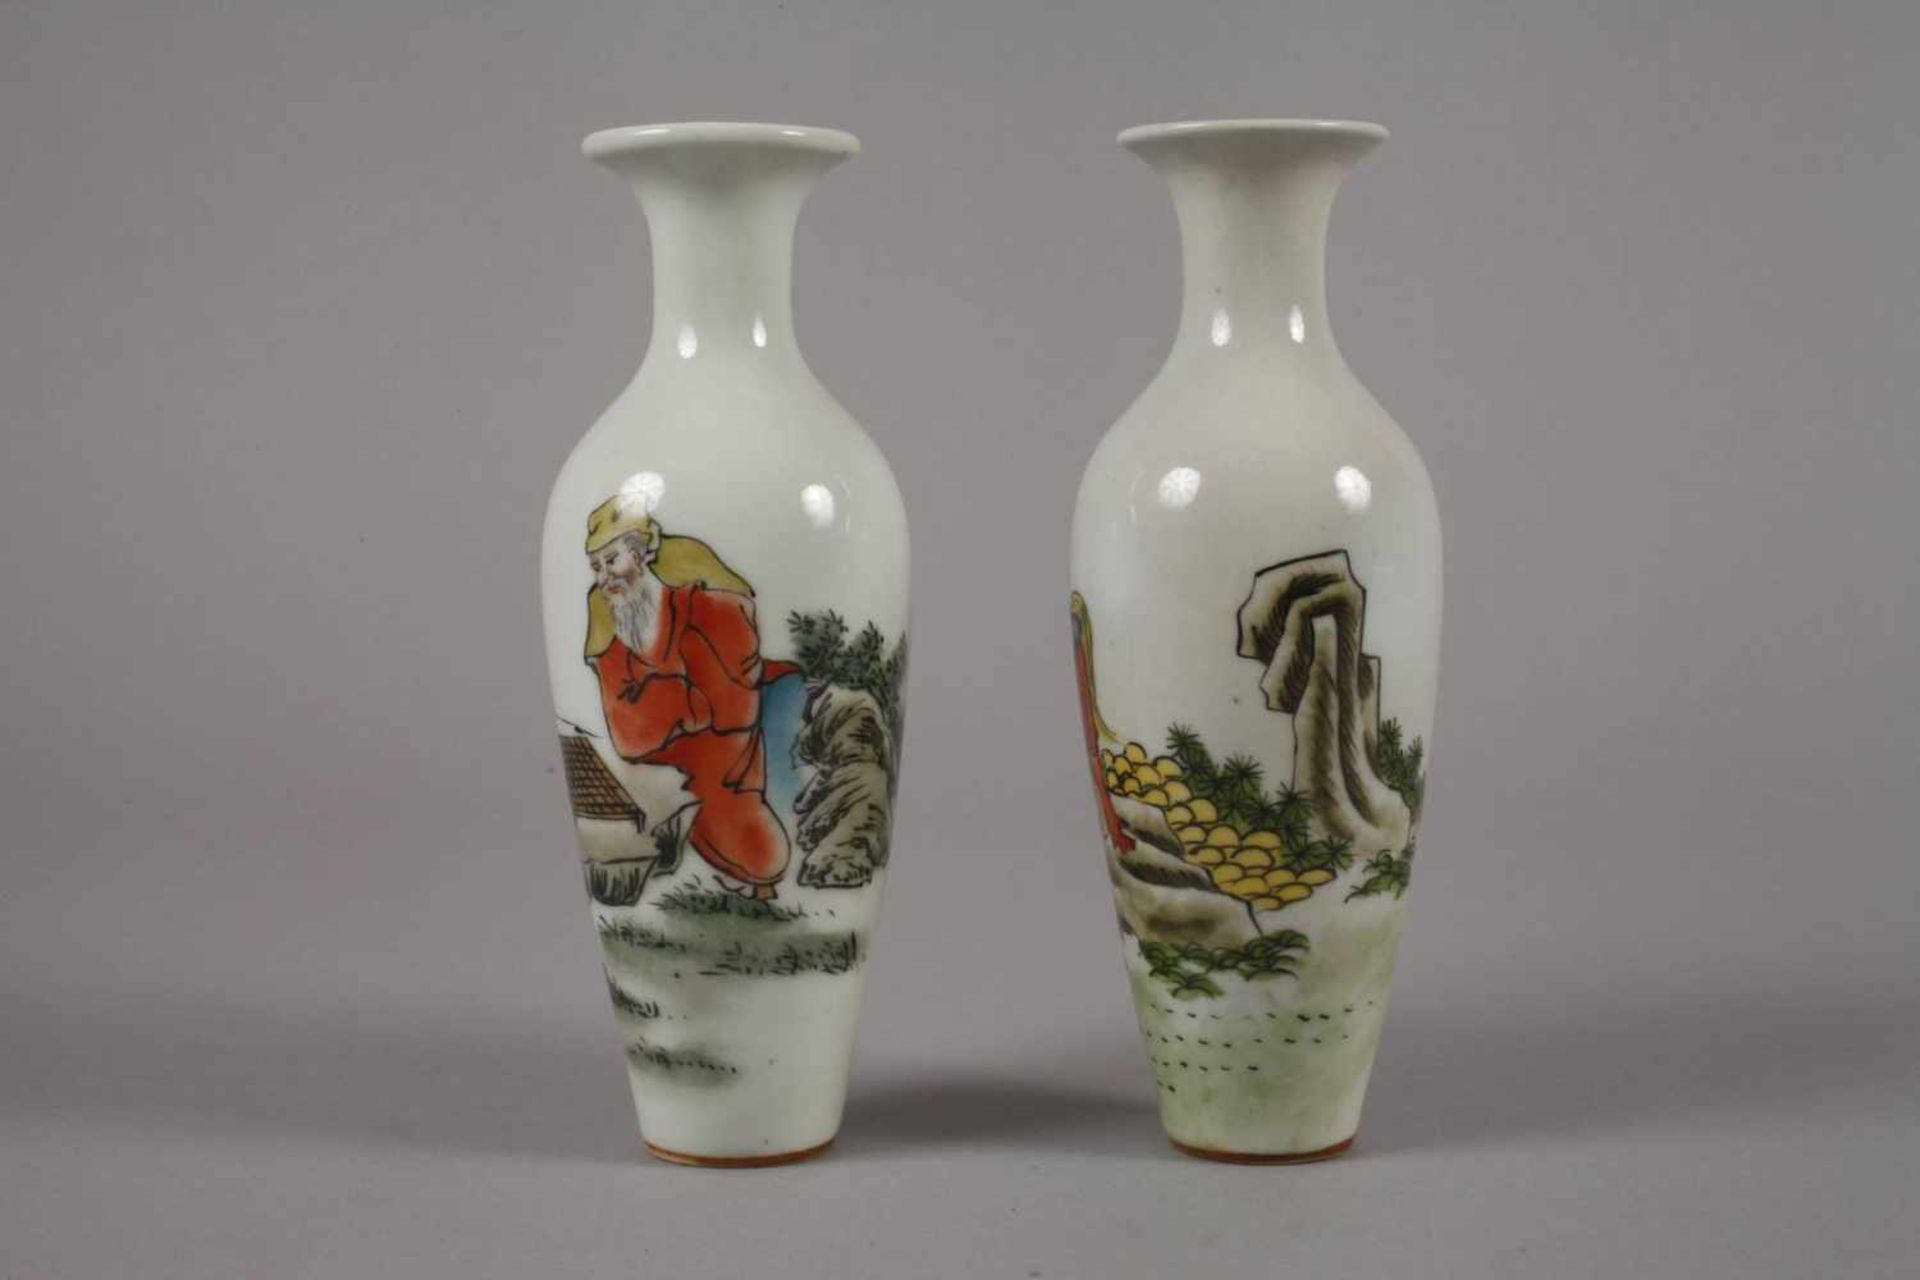 Sechs Vasen China1960er bis 1970er Jahre, gemarkt und signiert, Weißporzellan in polychromer - Bild 12 aus 12